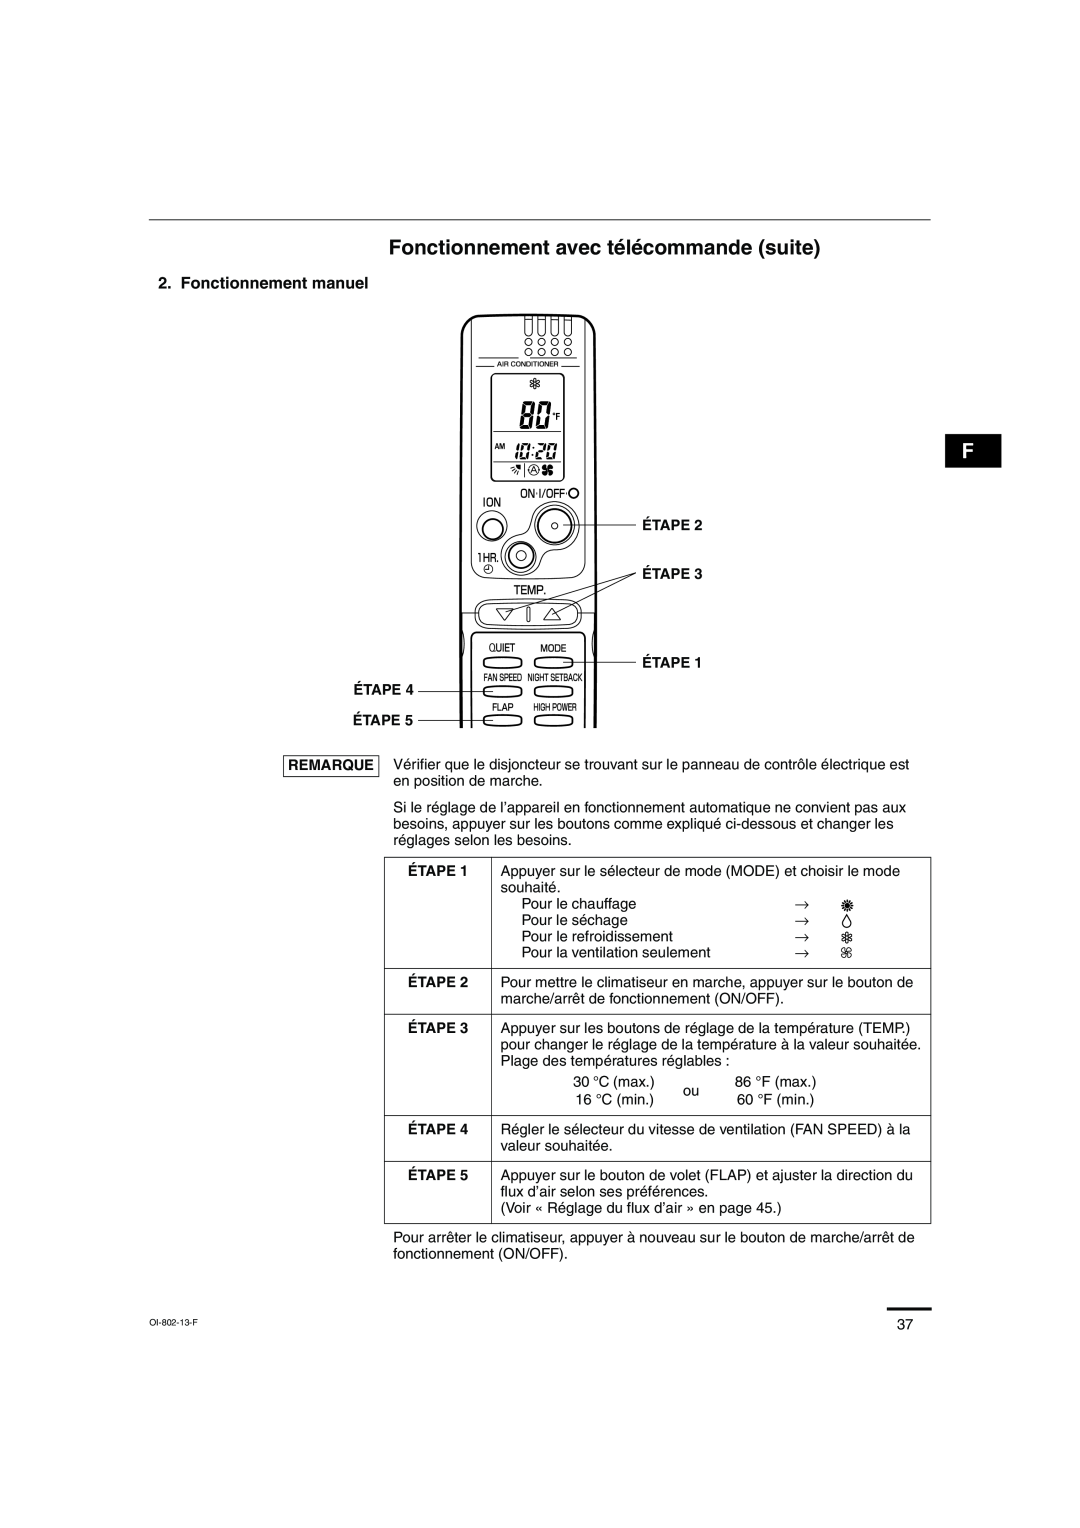 Sanyo KHS0971, KHS1271 instruction manual Fonctionnement avec télécommande suite, Fonctionnement manuel 